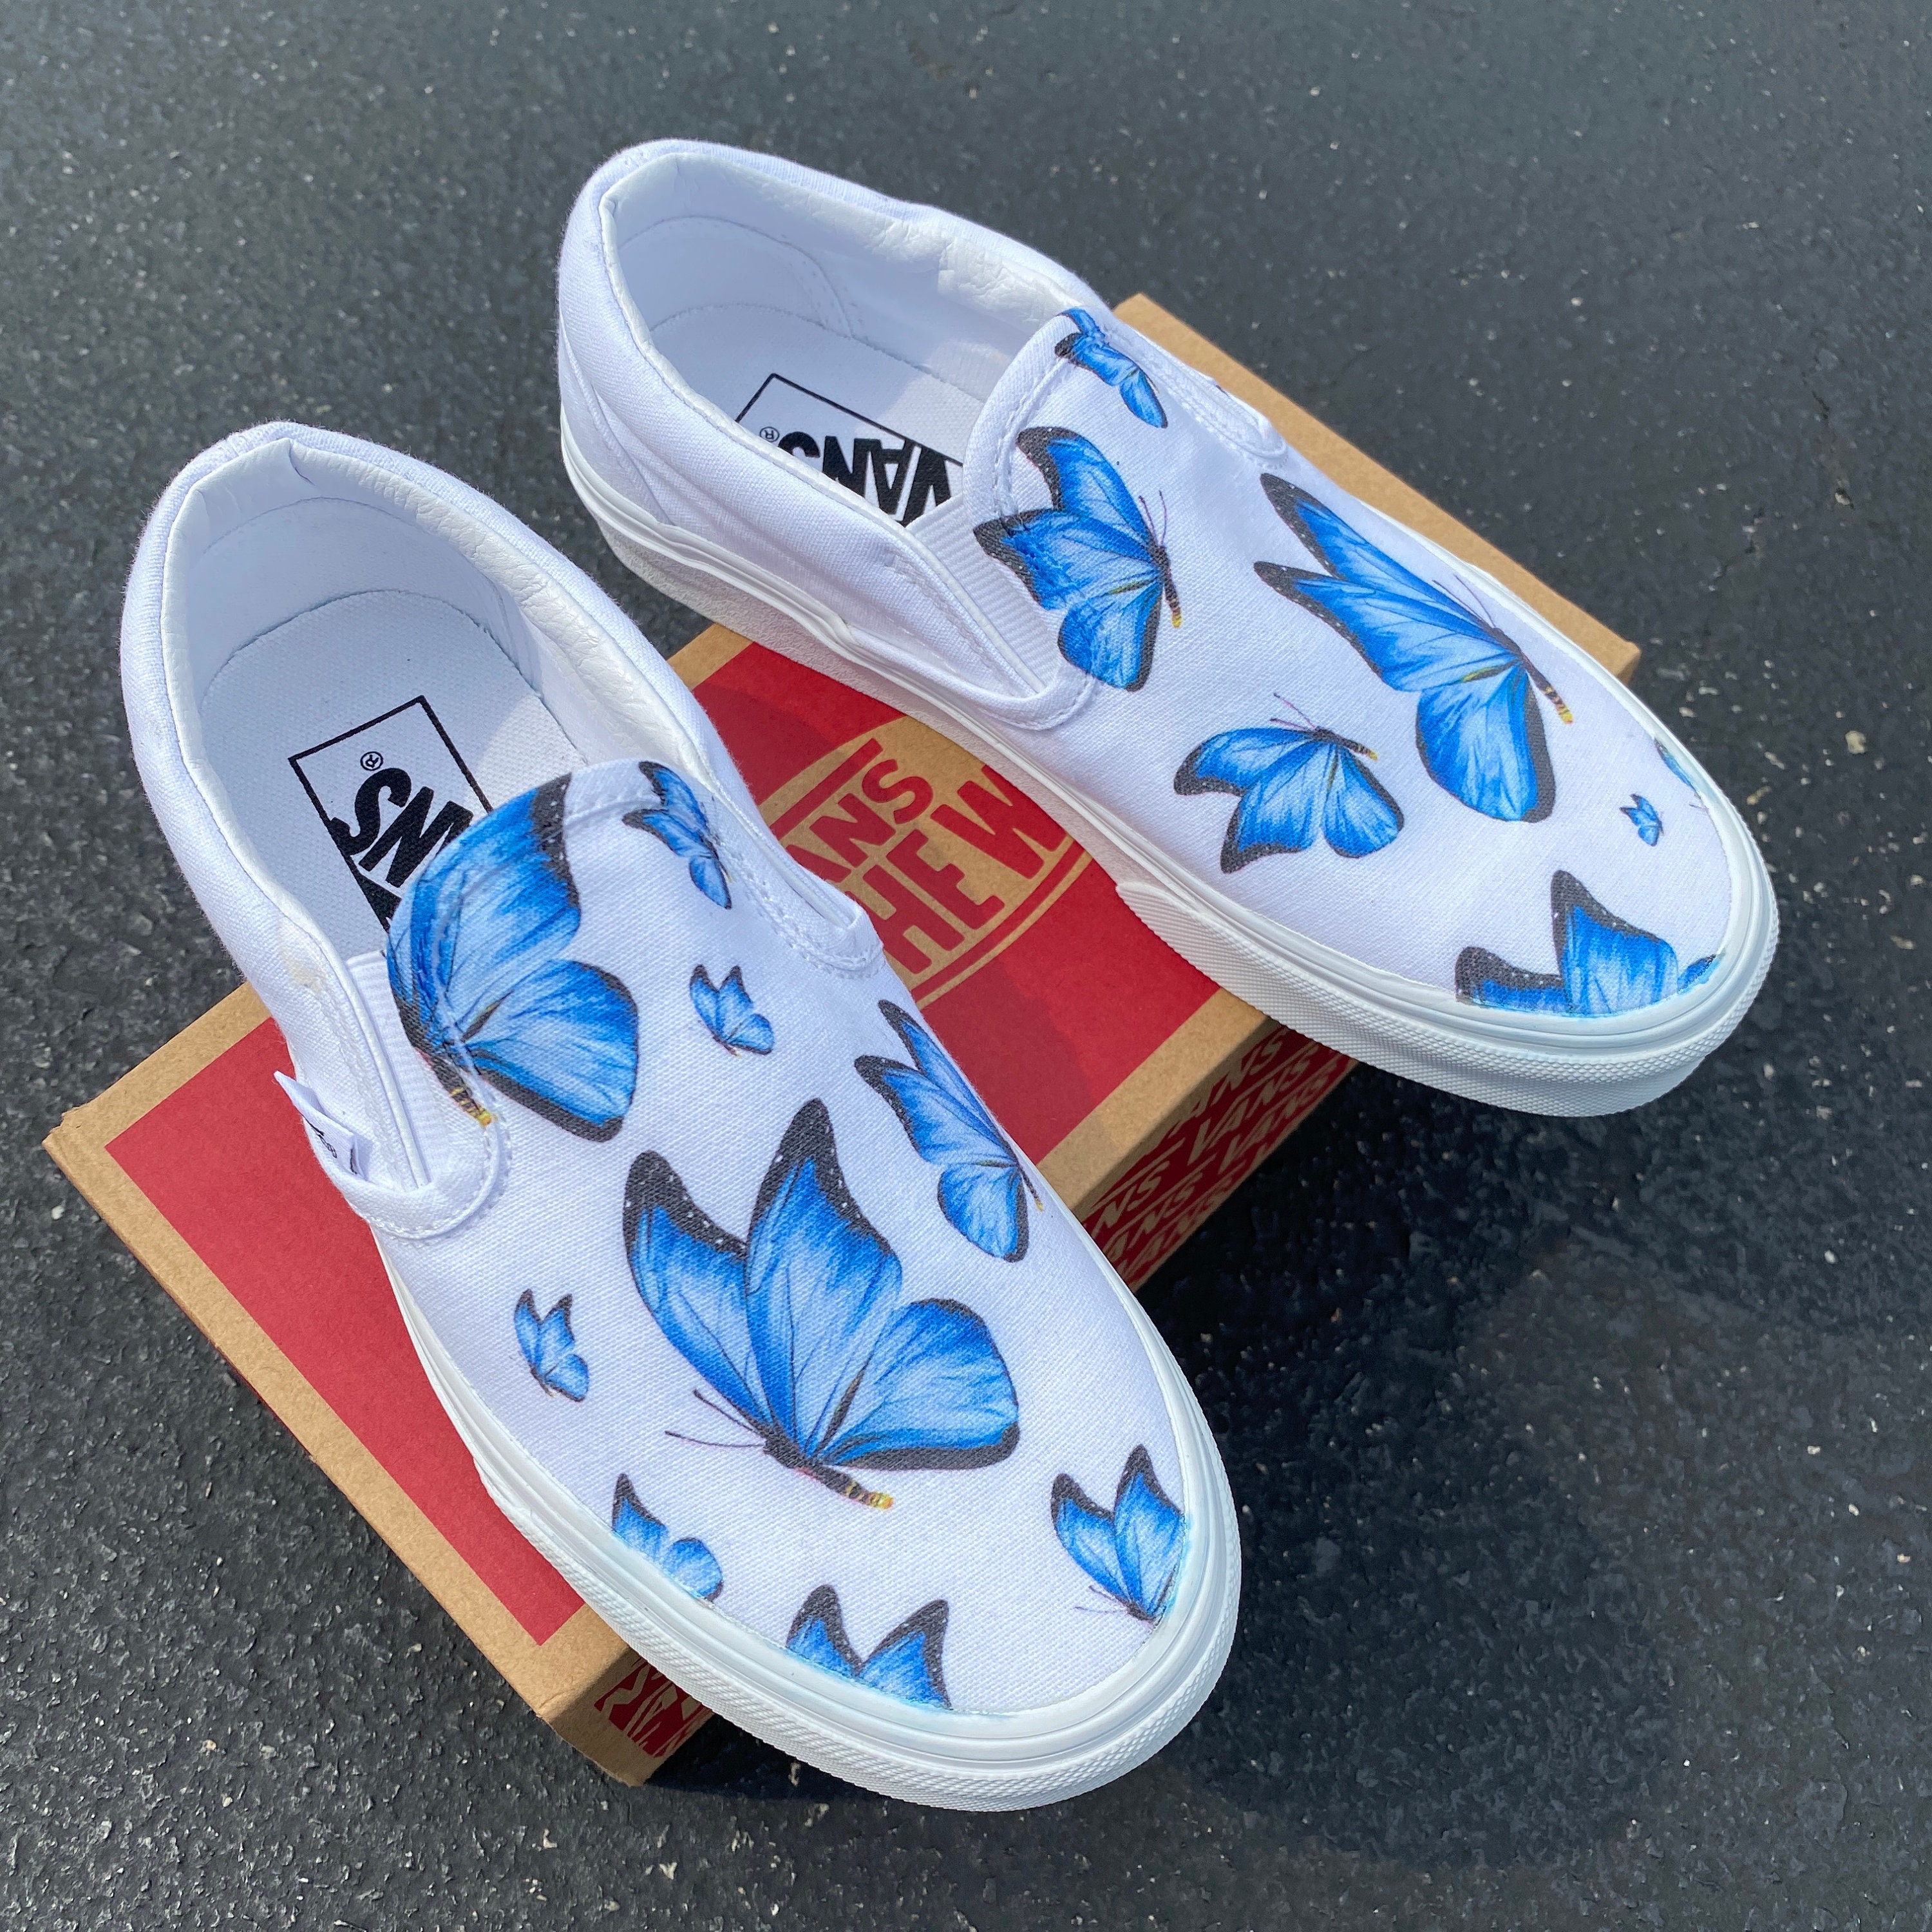 Blue Butterfly White Slip on Vans Custom Vans Shoes - Etsy